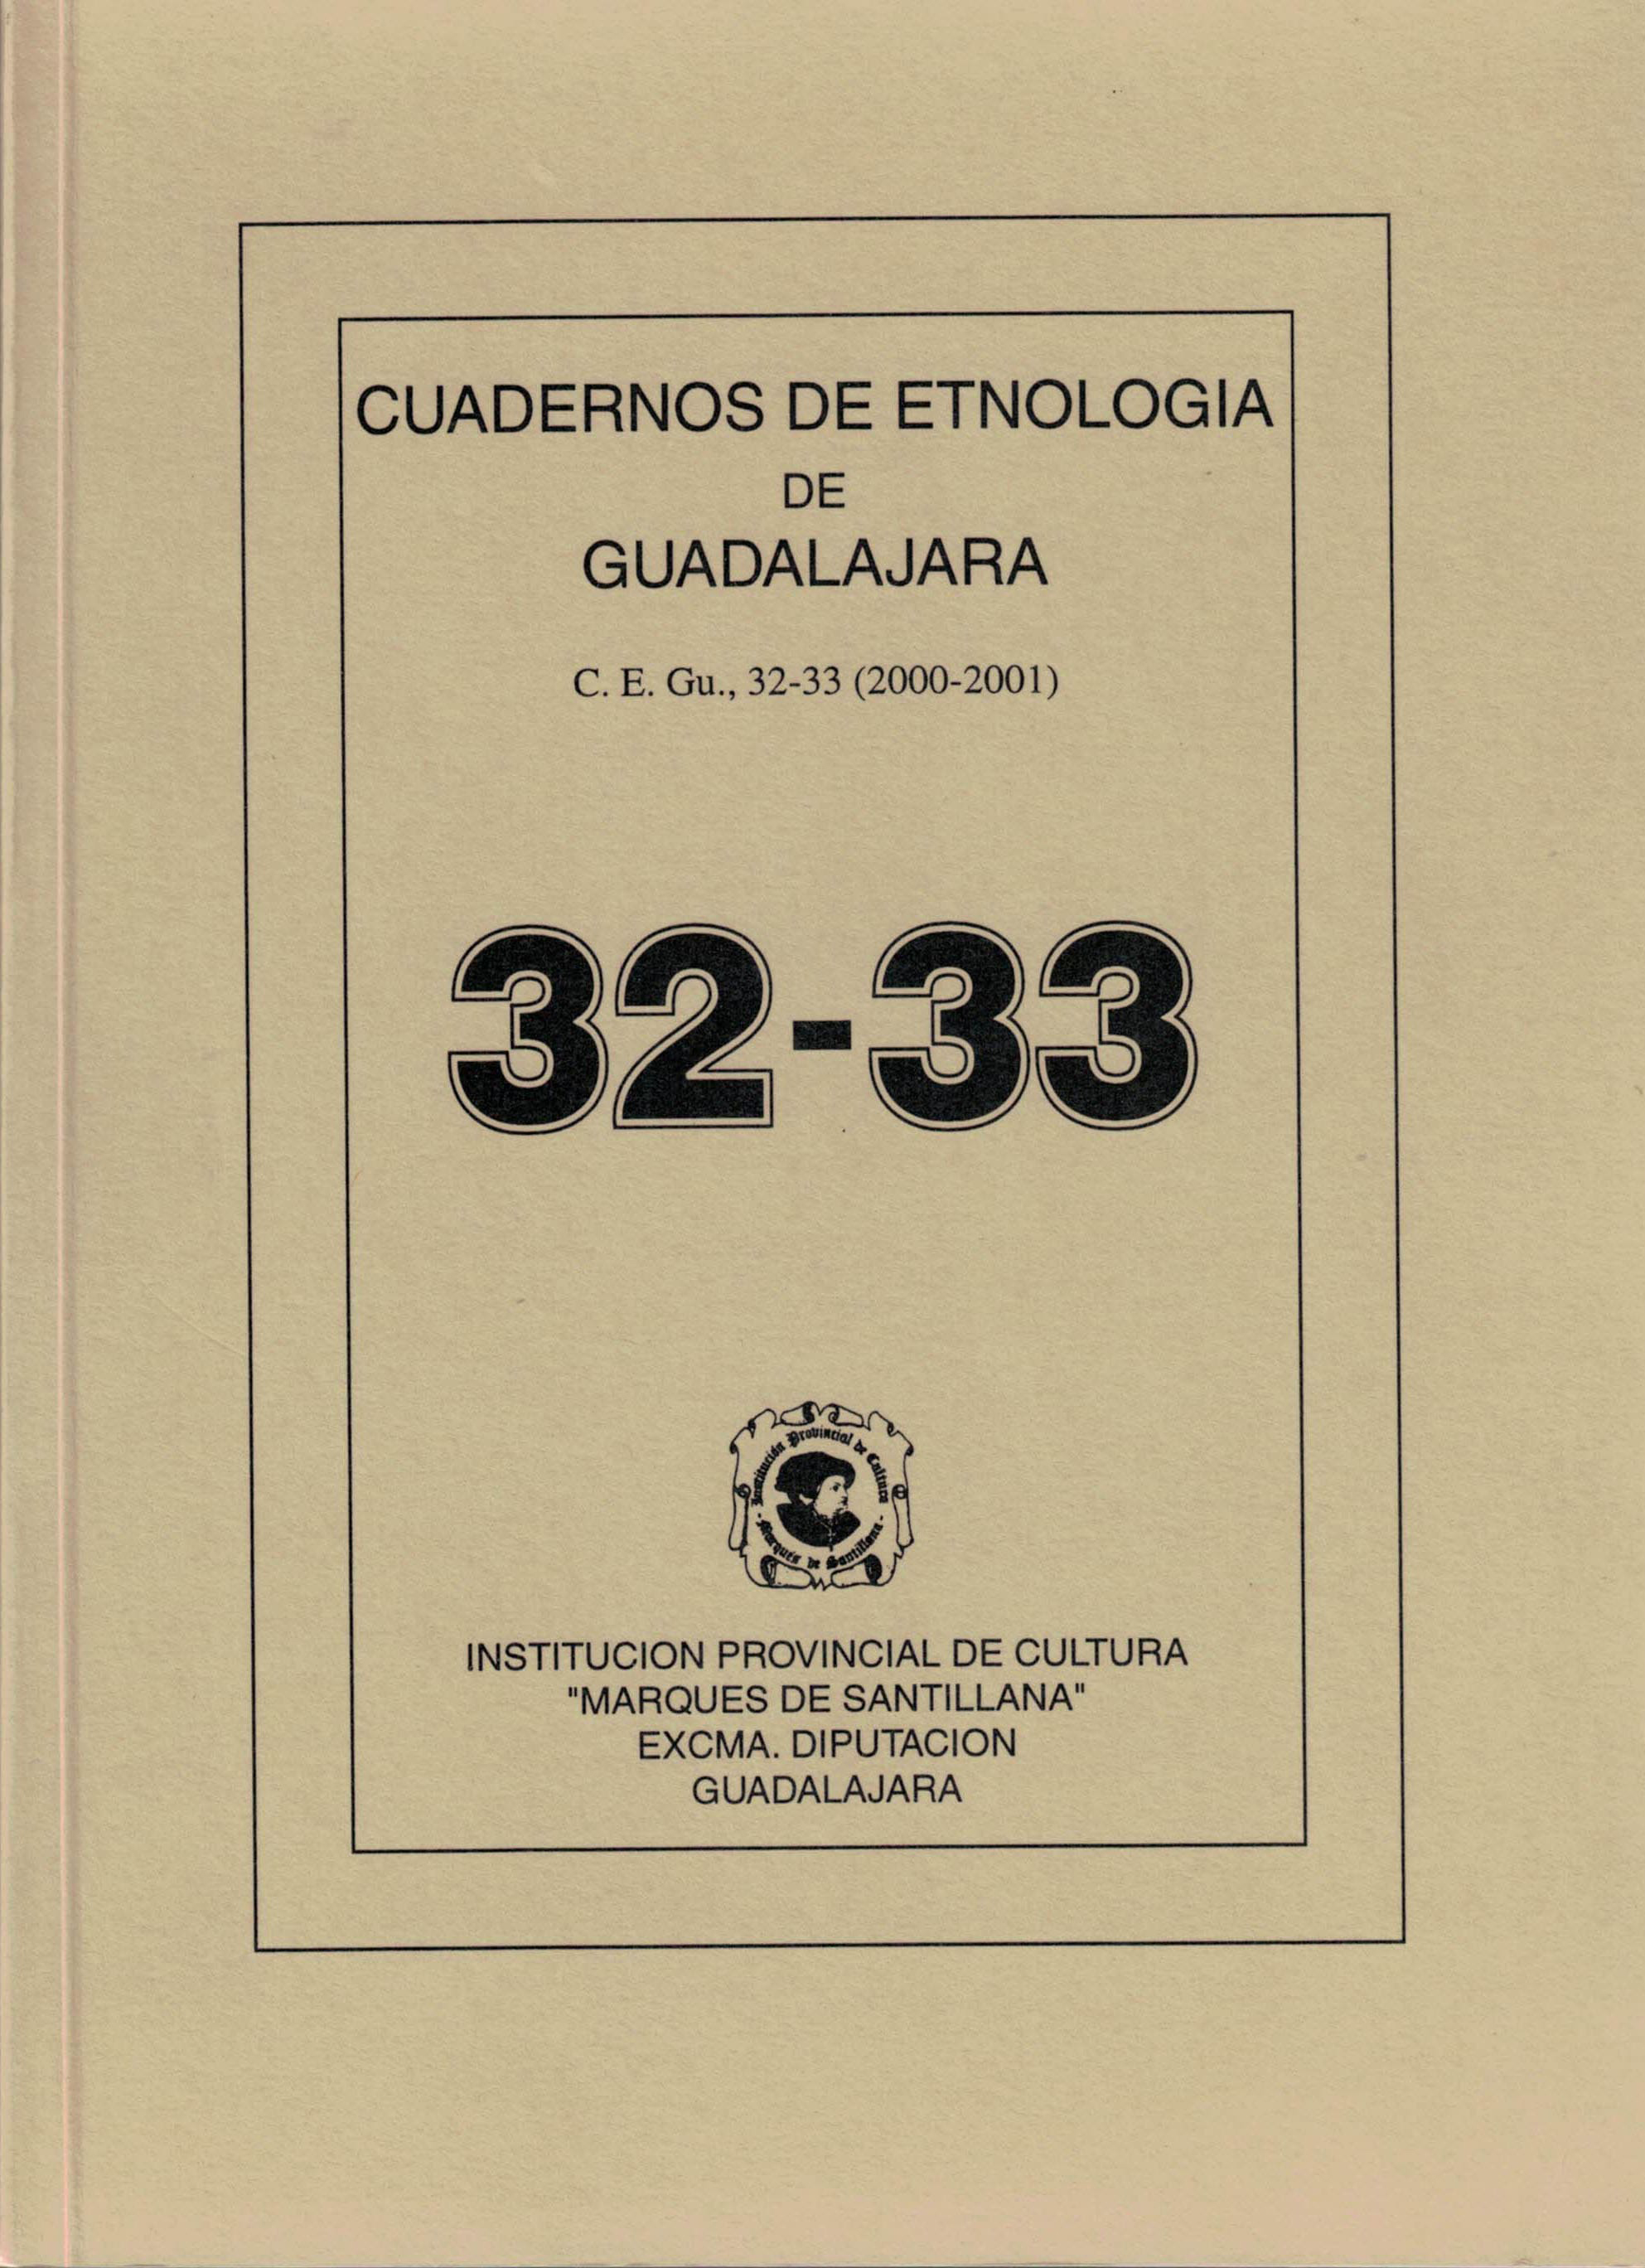 Cuadernos de Etnologia de Guadalajara 32-33